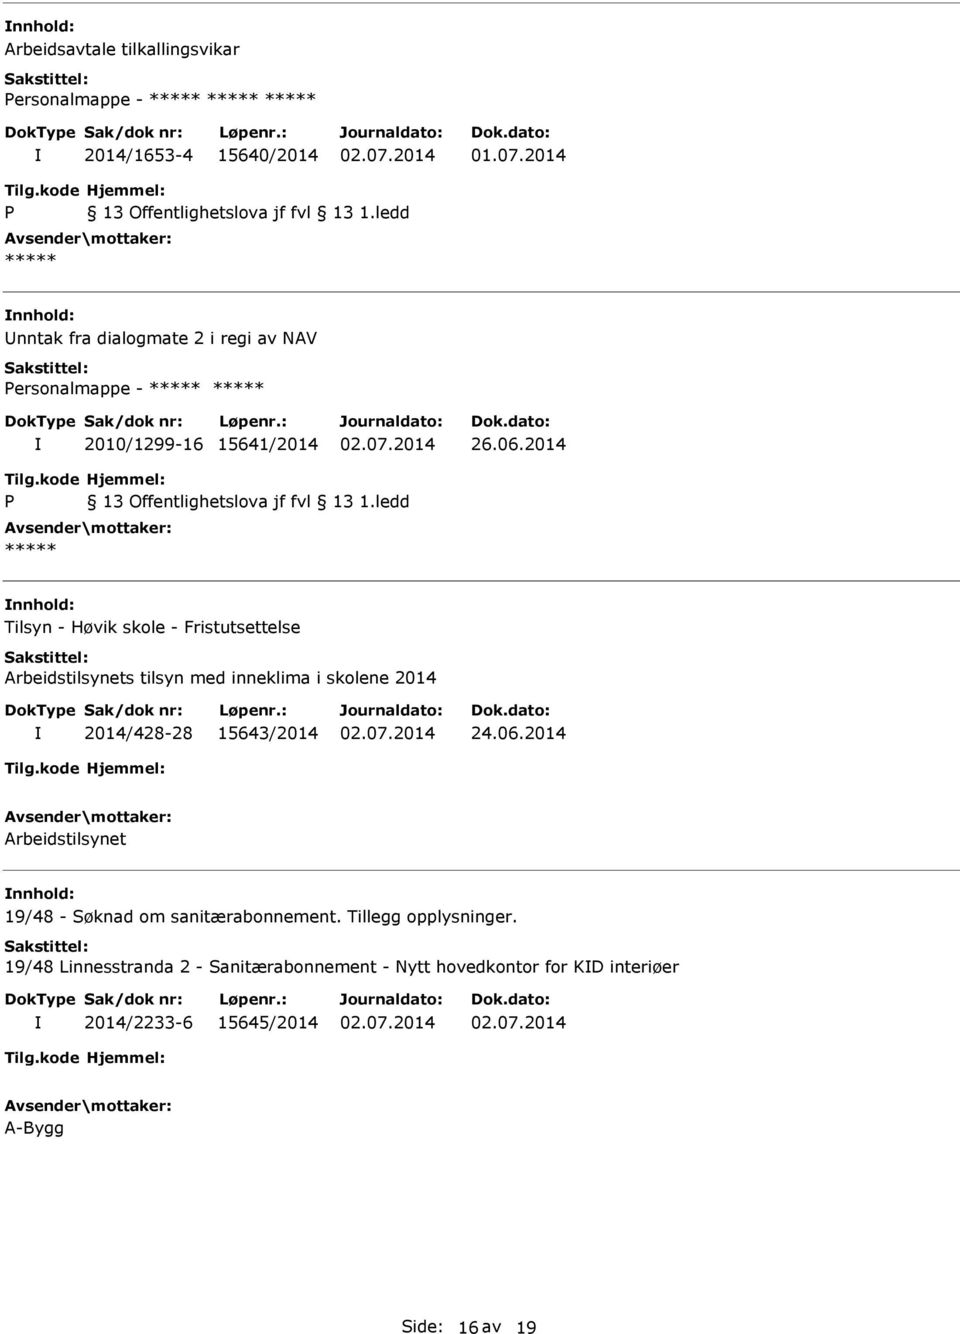 2014 Tilsyn - Høvik skole - Fristutsettelse Arbeidstilsynets tilsyn med inneklima i skolene 2014 2014/428-28 15643/2014